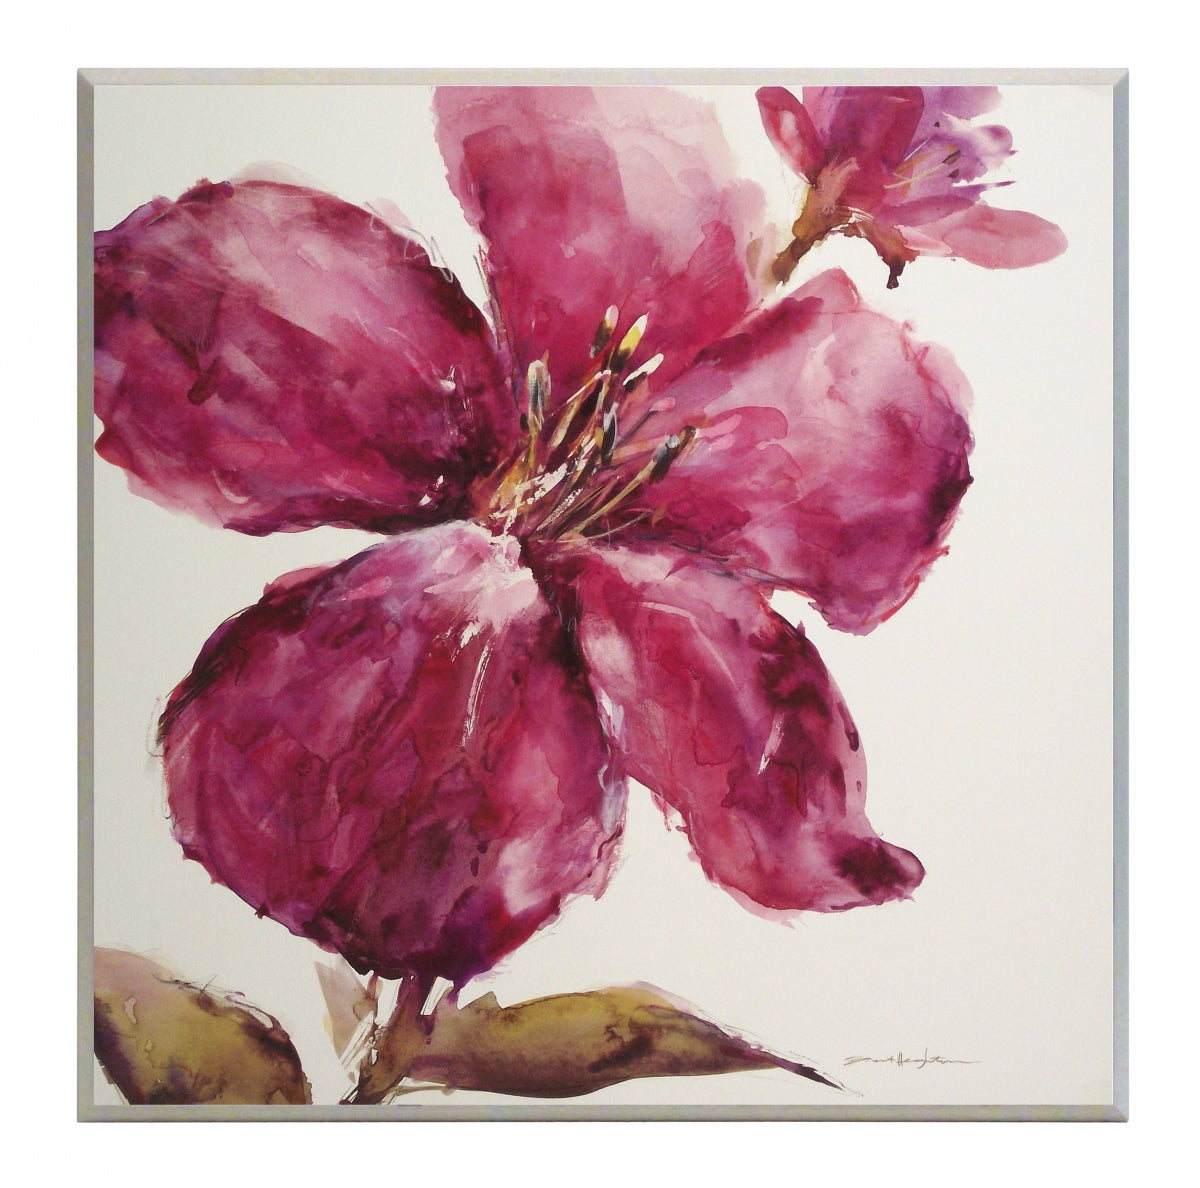 Obraz - Różowy akwarelowy kwiat - reprodukcja na płycie A5539 51x51 cm - Obrazy Reprodukcje Ramy | ergopaul.pl